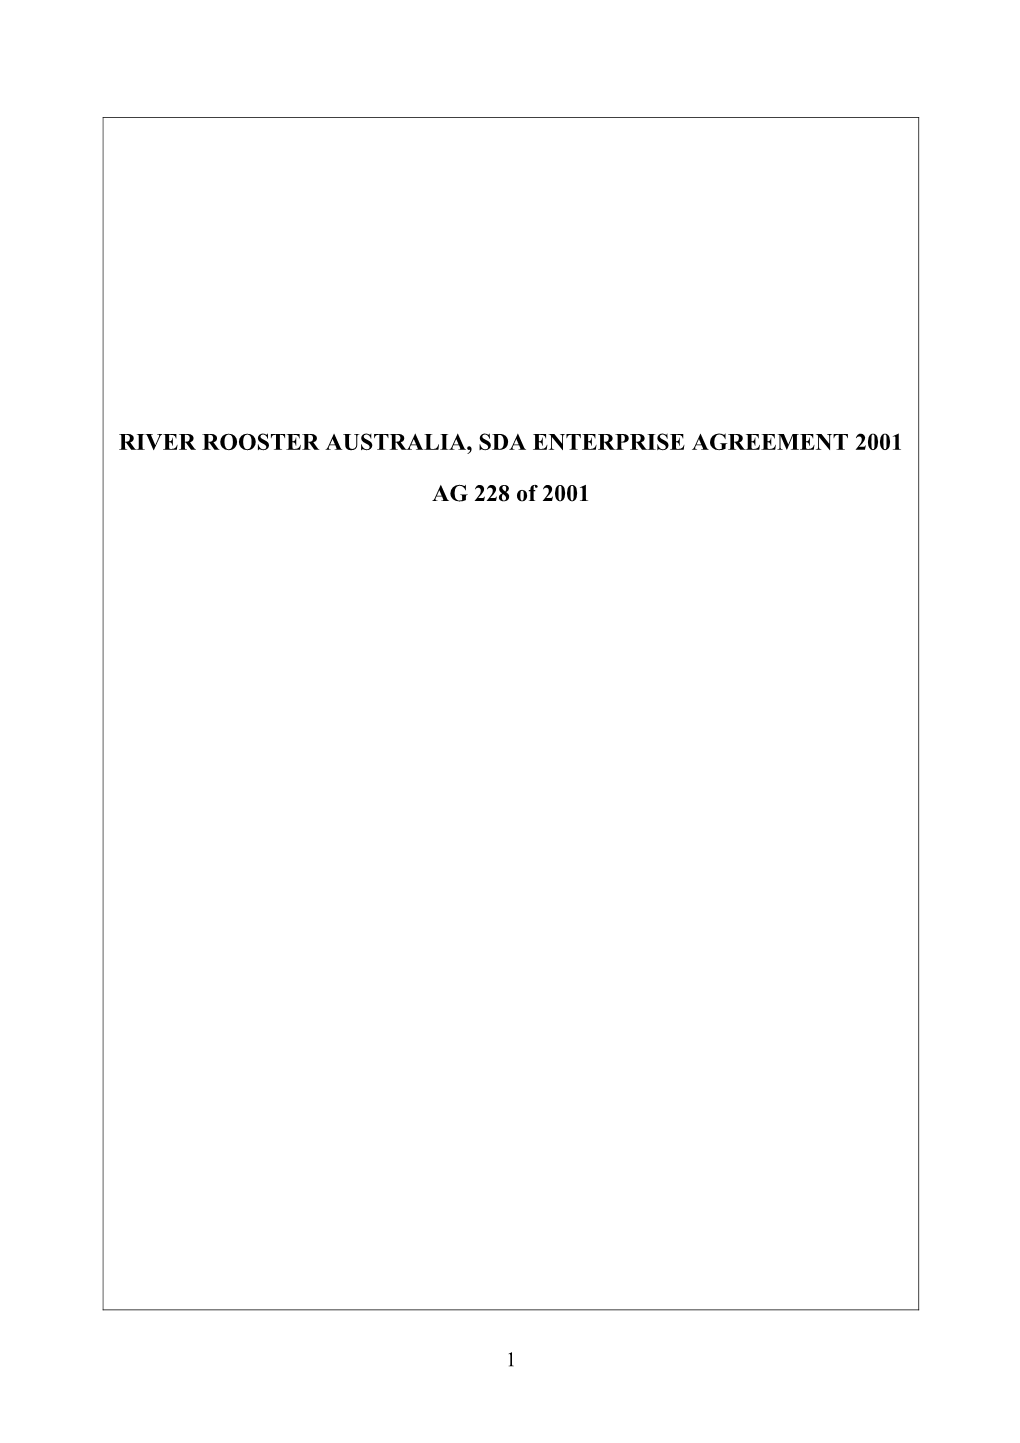 River Rooster Australia, Sda Enterprise Agreement 2001